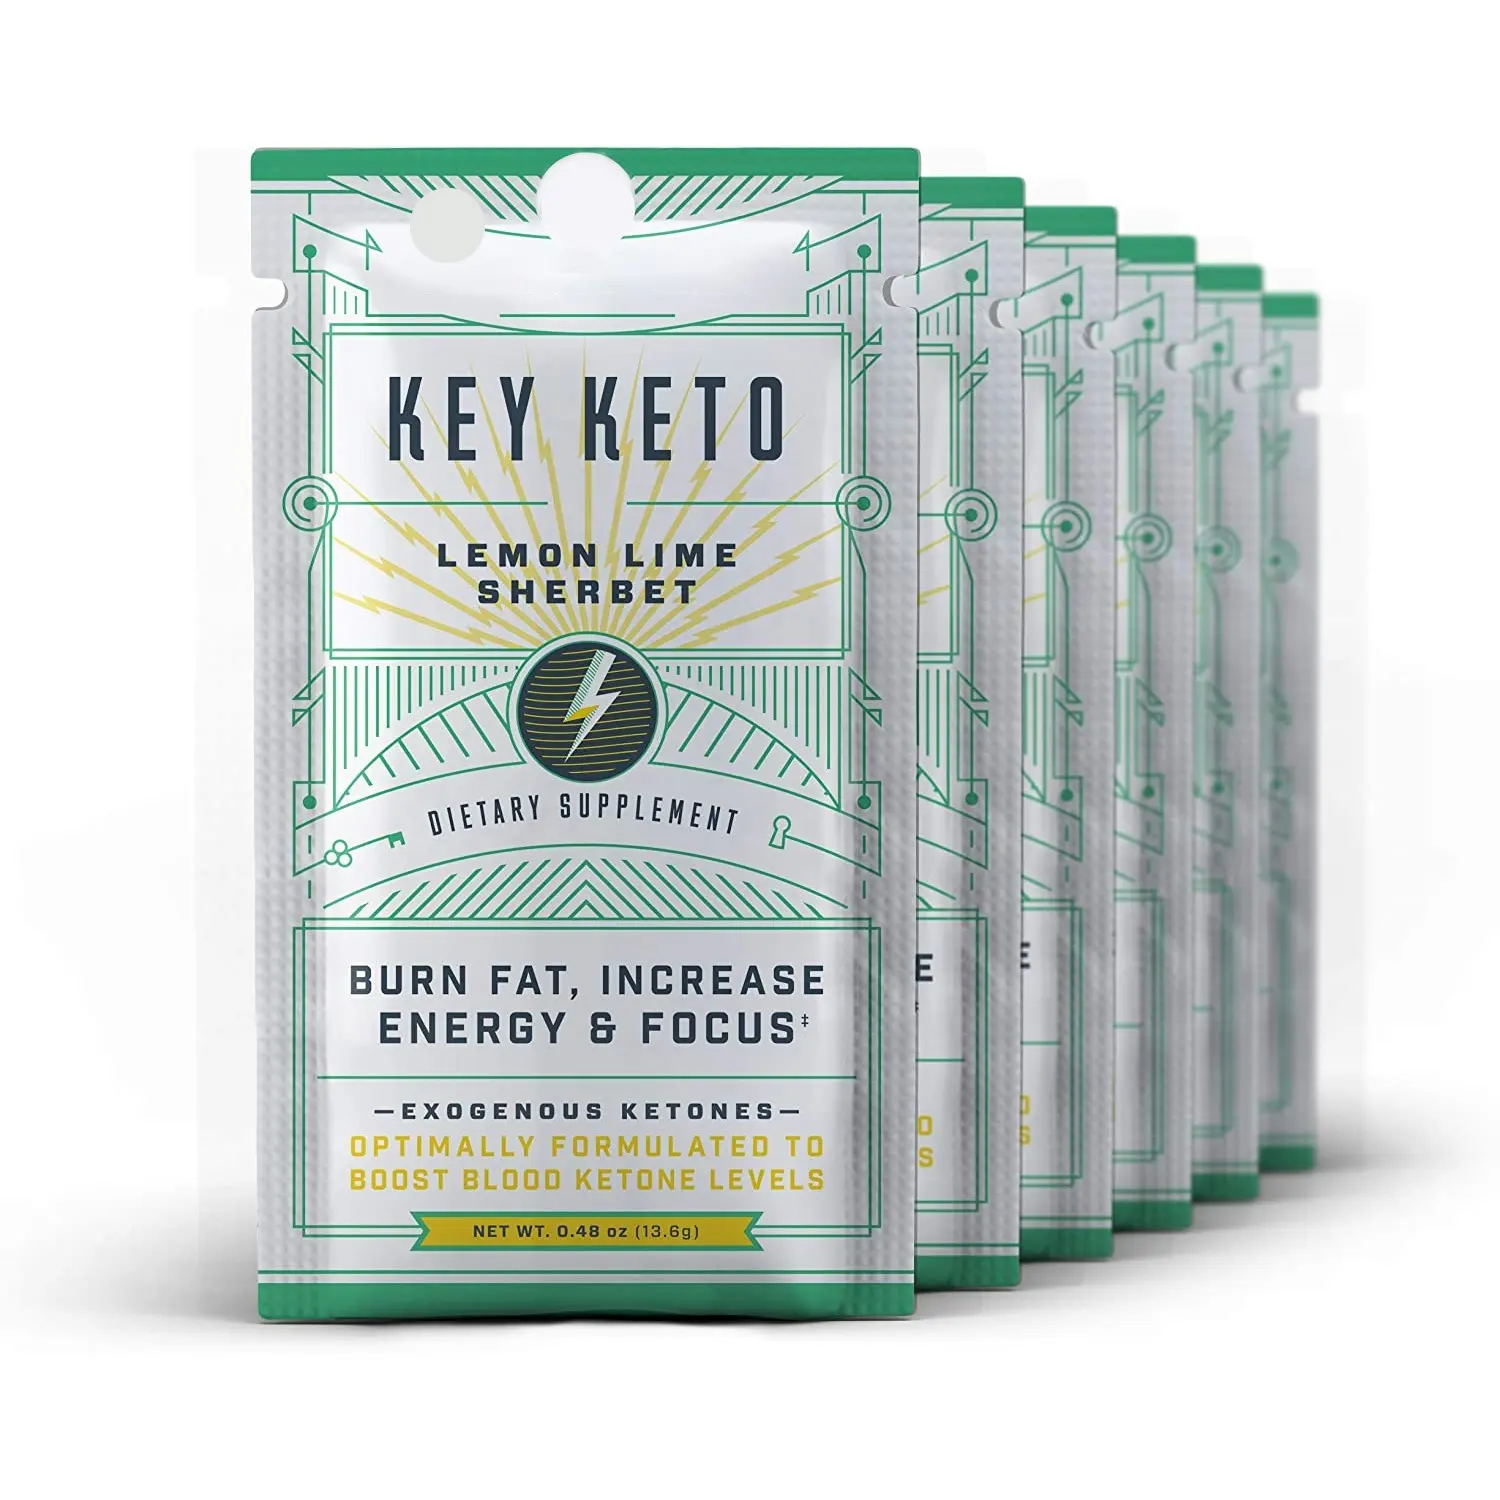 Keto ekzojen keton takviyesi 6 tek servis paketleri ketoz için anında Keto Mix sizi içine ketoz hızlı yardımcı olur keto diyet